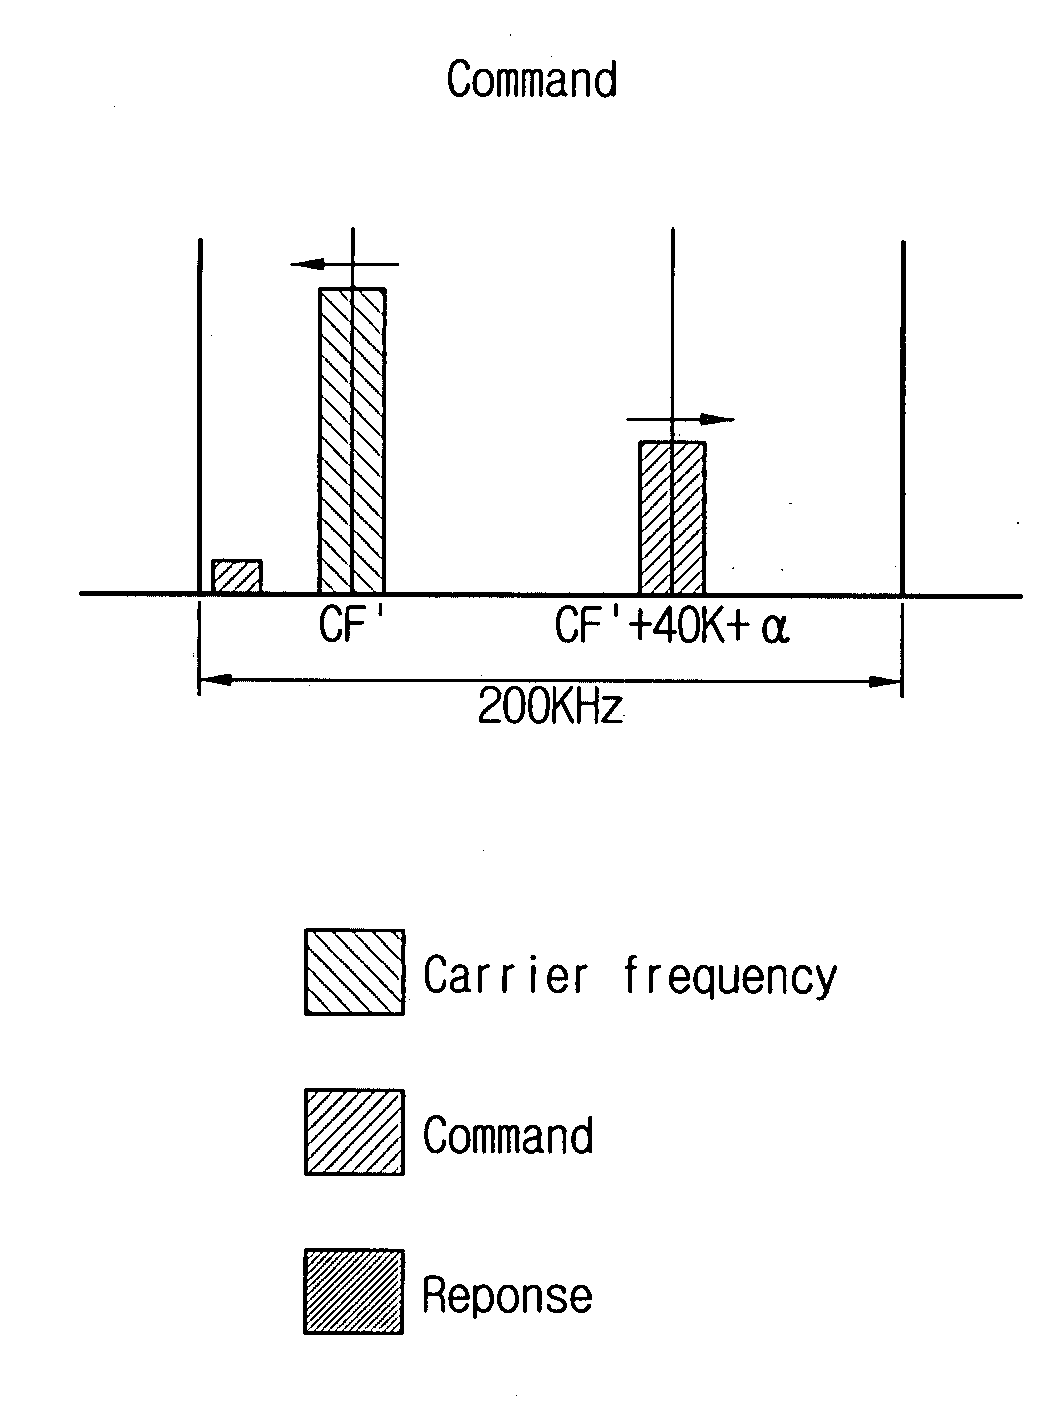 SSB response method of RFID tag